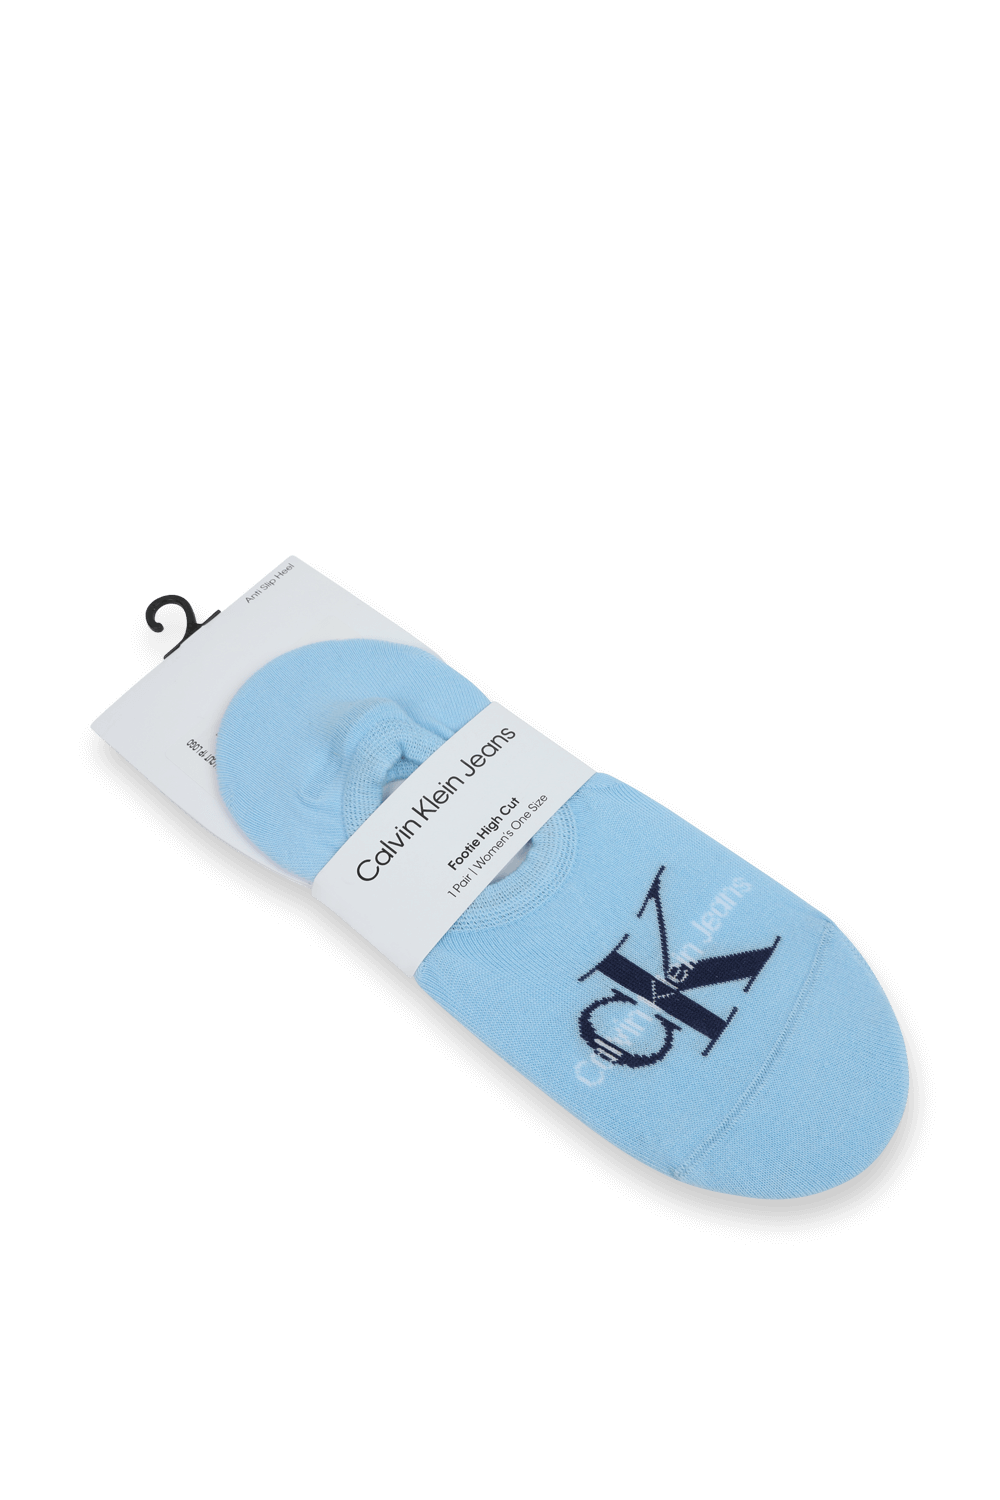 גרביים פוטי היי קאט מונוגרמה בגוון כחול CALVIN KLEIN